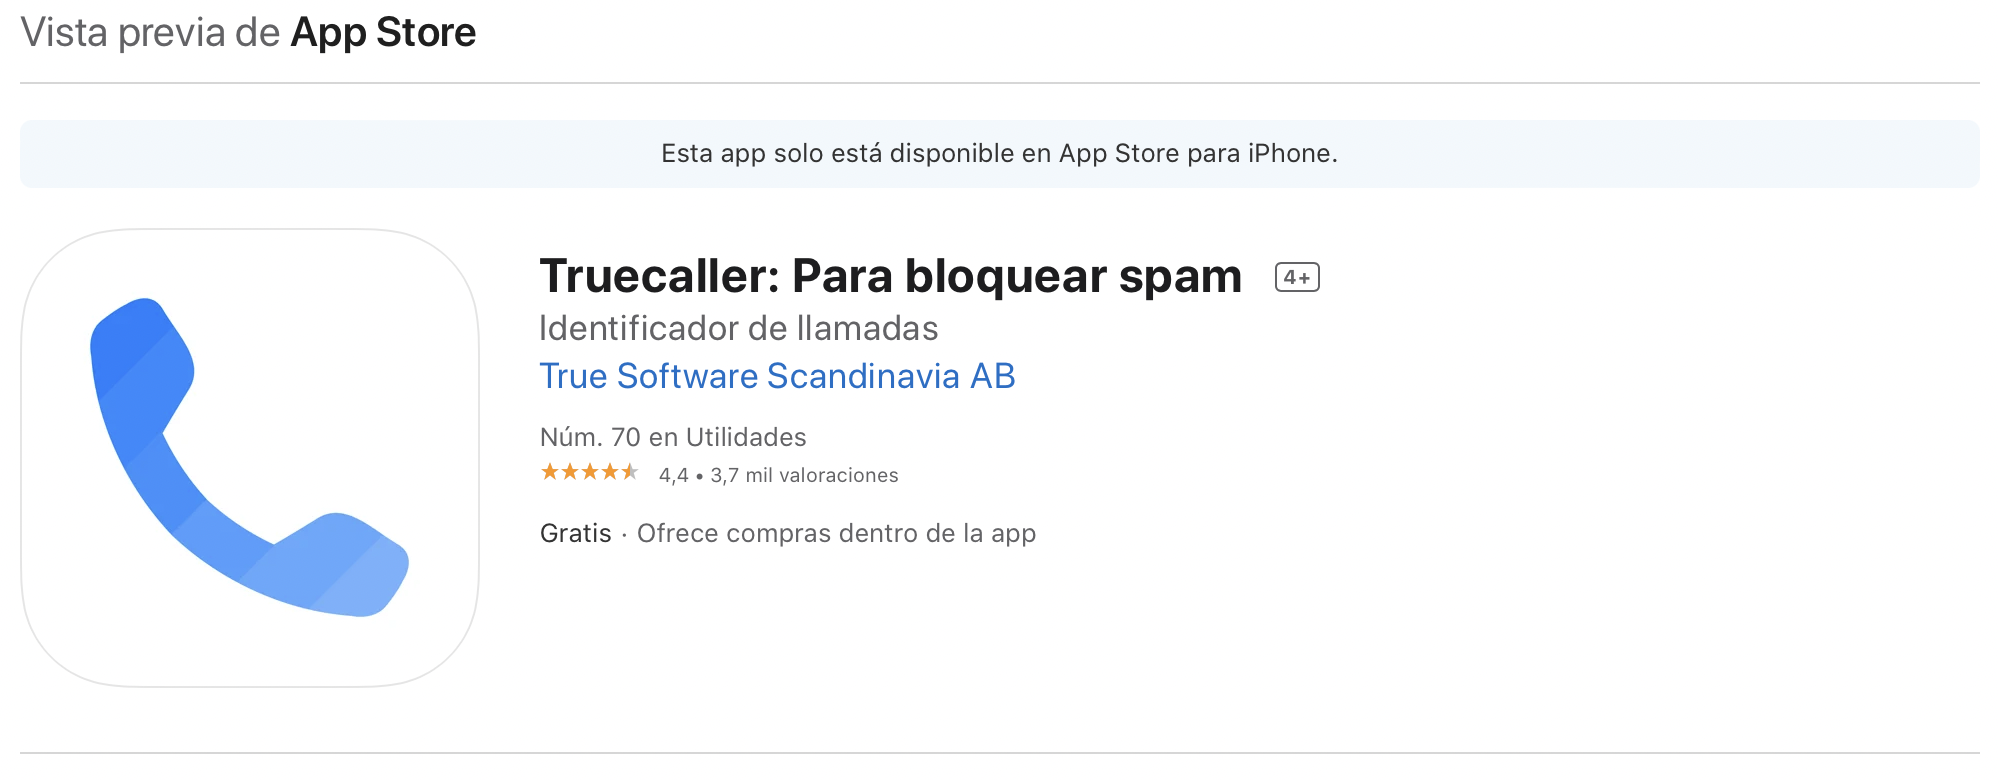 Aplicación TrueCaller. (foto: App Store)